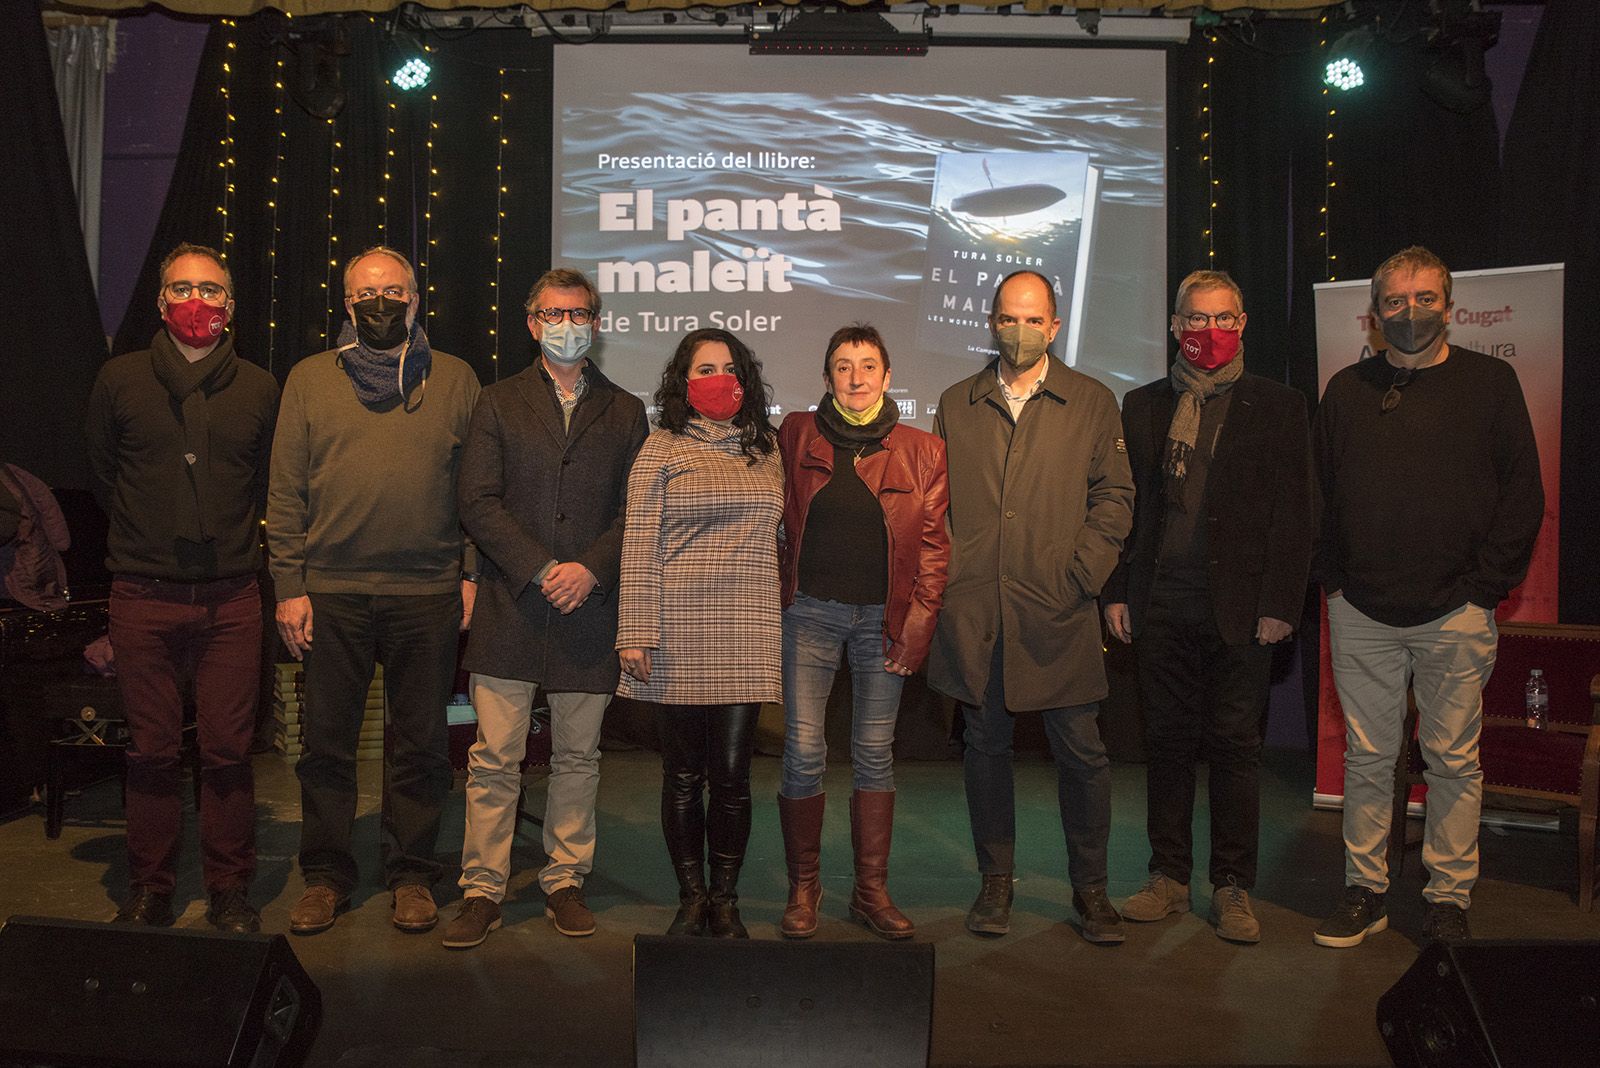 Presentació del llibre "El pantà maleït" i "Orillas del pantano" de Tura Soler. Foto: Bernat Millet.